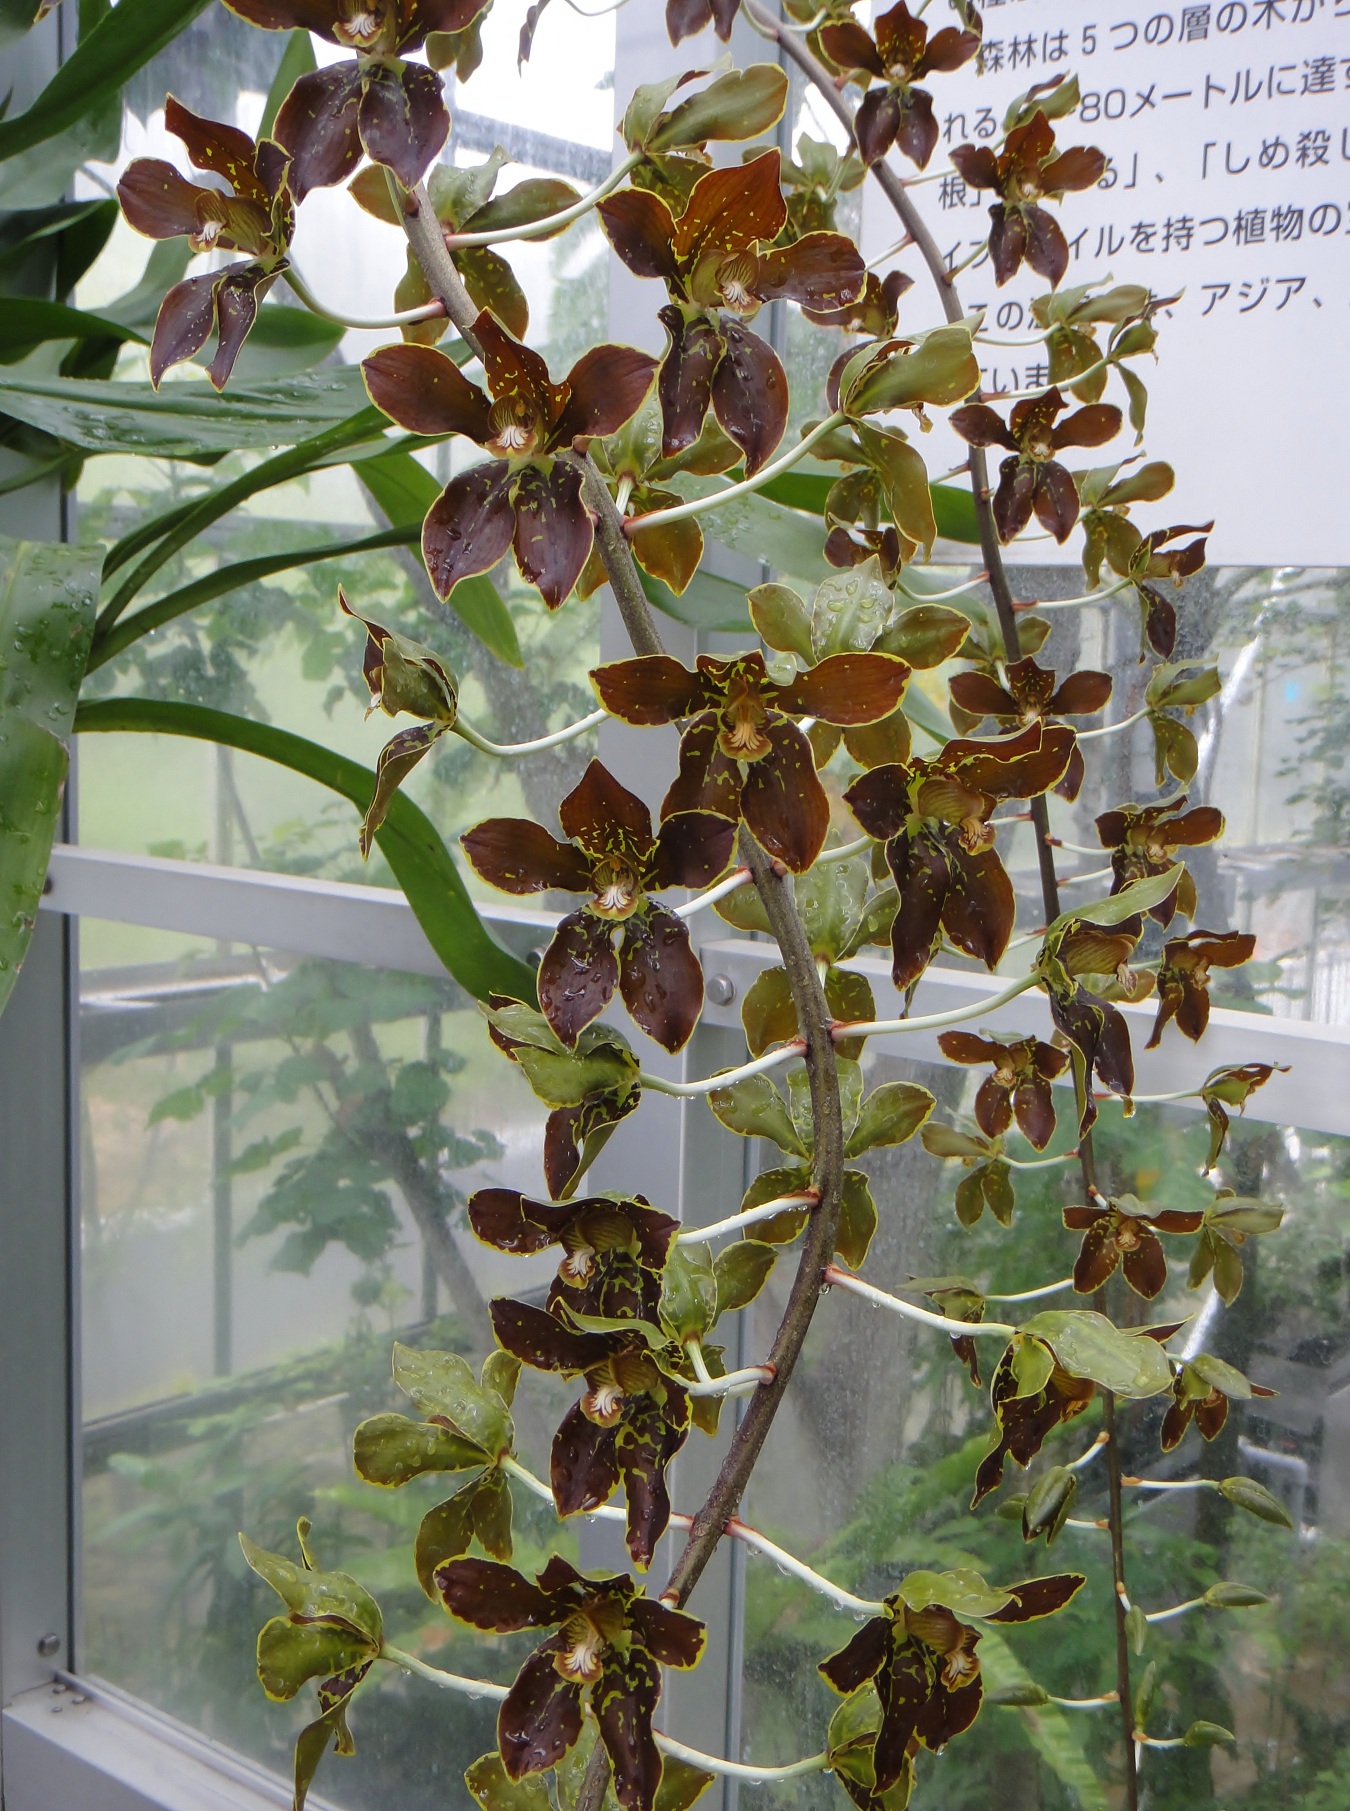 http://orchids.la.coocan.jp/Grammatophyllum/Grammatophyllum%20martae/DSC04859.JPG